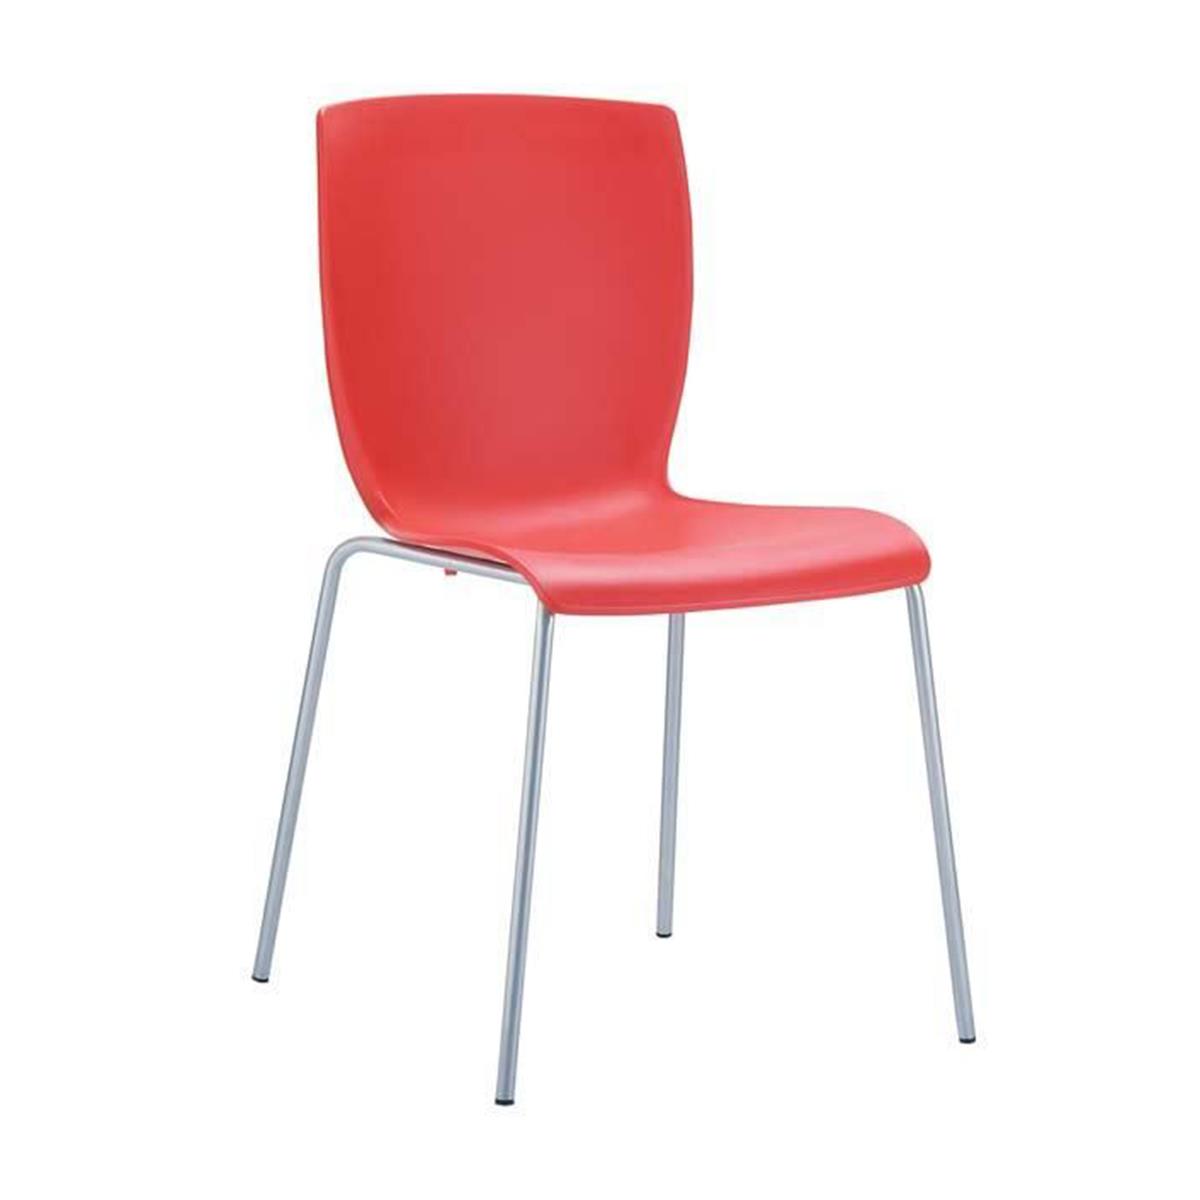 Cadeira de Visita RONNY, Design Simples e Moderno, Em Alumínio, Cor Vermelho